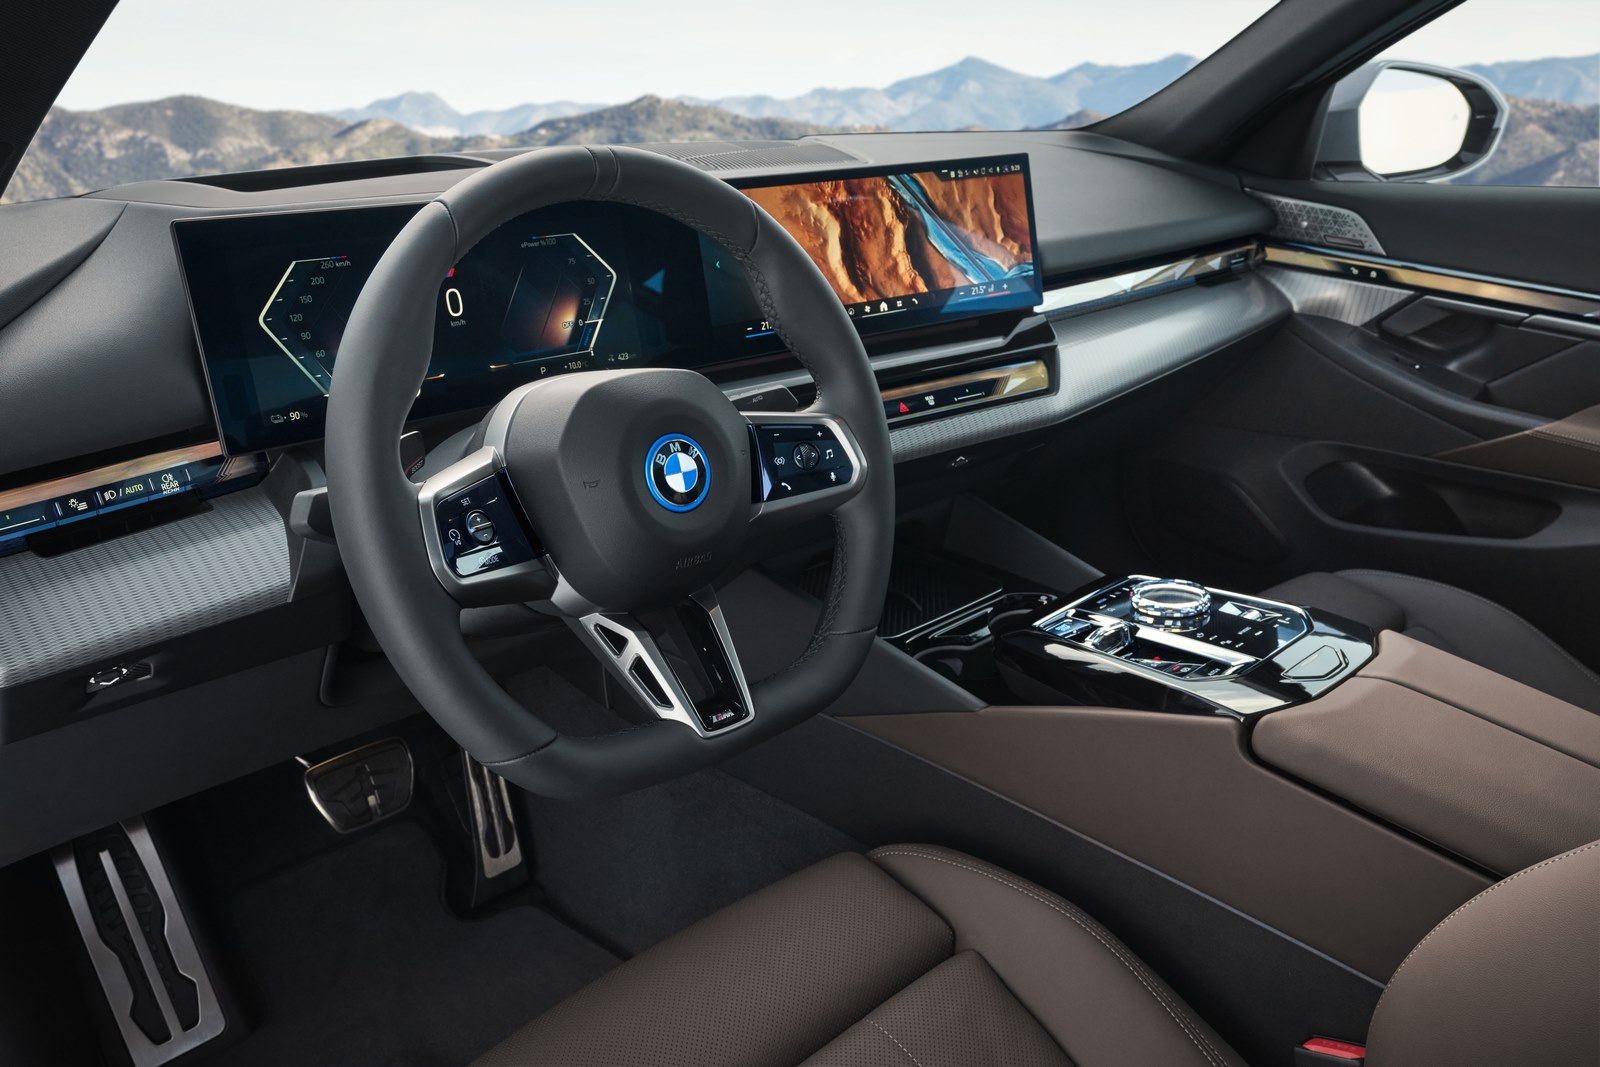 New BMW Série 5 Interior